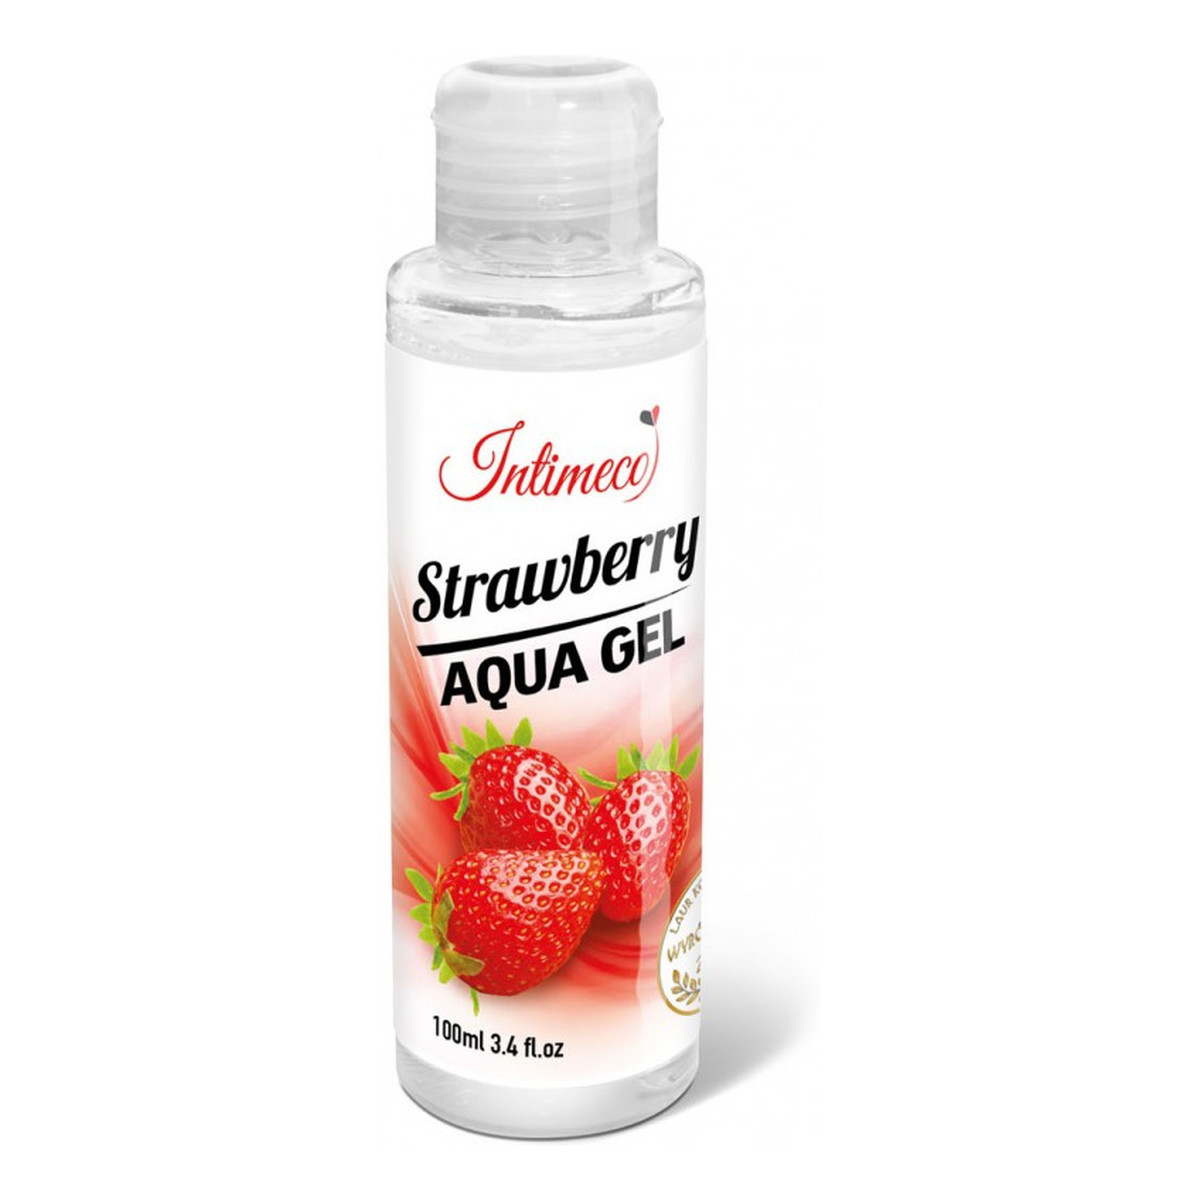 Intimeco Strawberry Aqua Gel nawilżający Żel intymny o aromacie truskawkowym 100ml